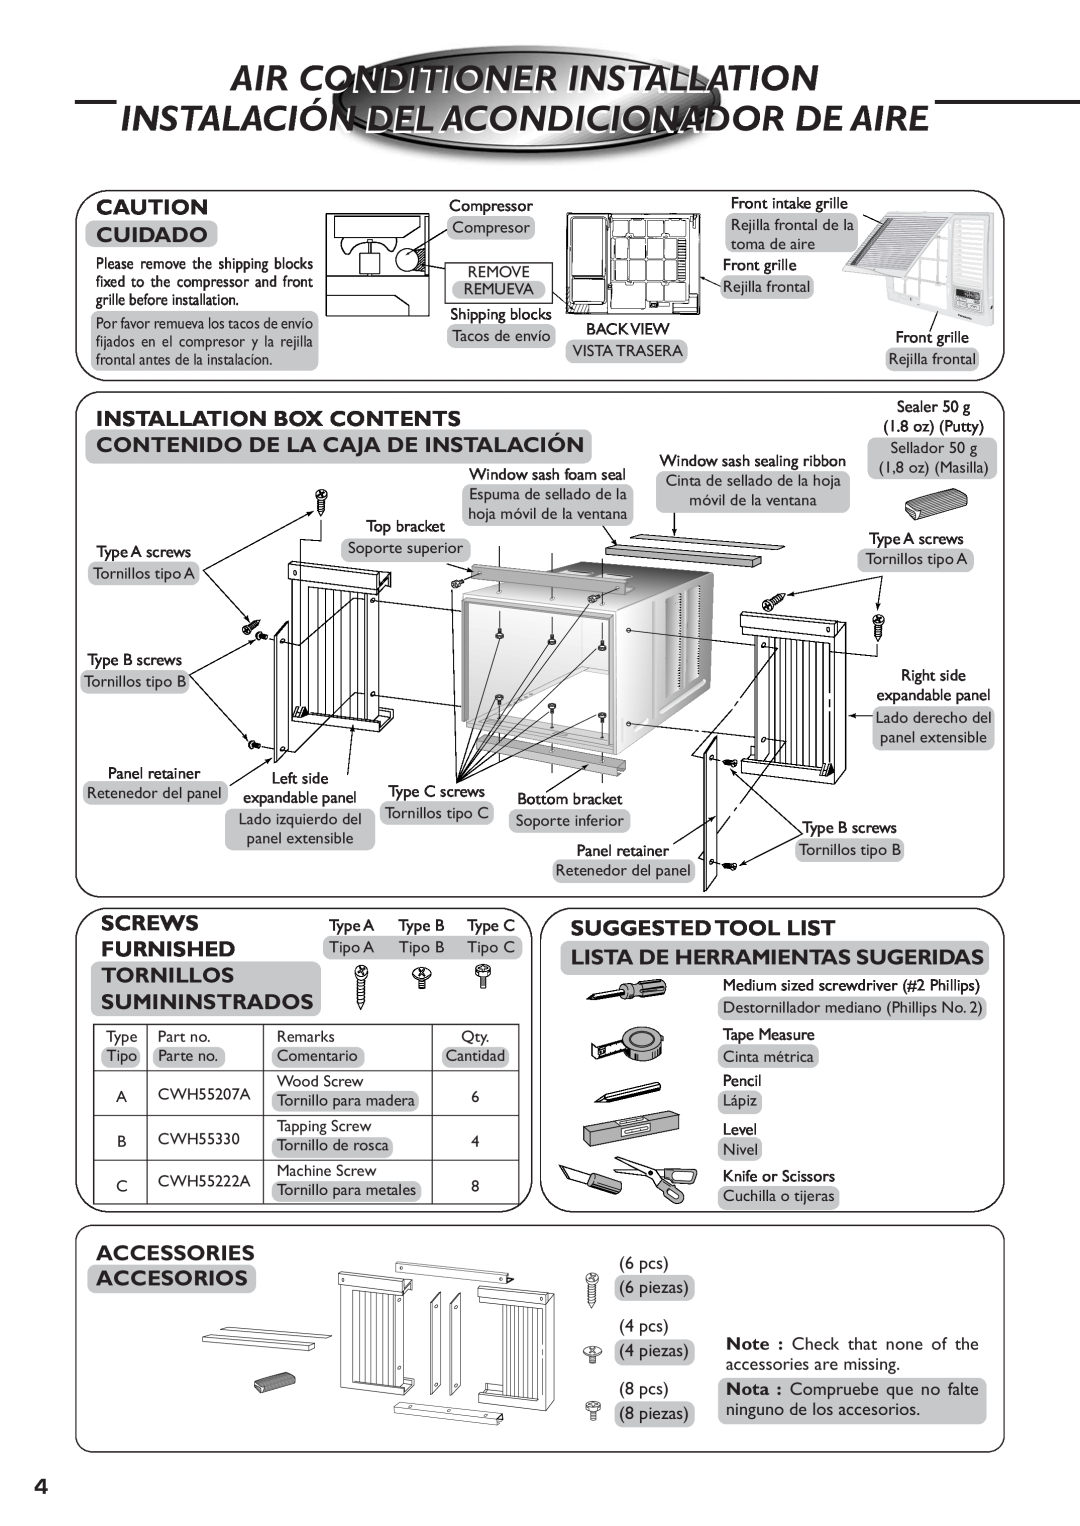 Panasonic CW-XC83YU Air Conditioner Installation, Instalación Del Acondicionador De Aire, Cuidado, Screws, Furnished 